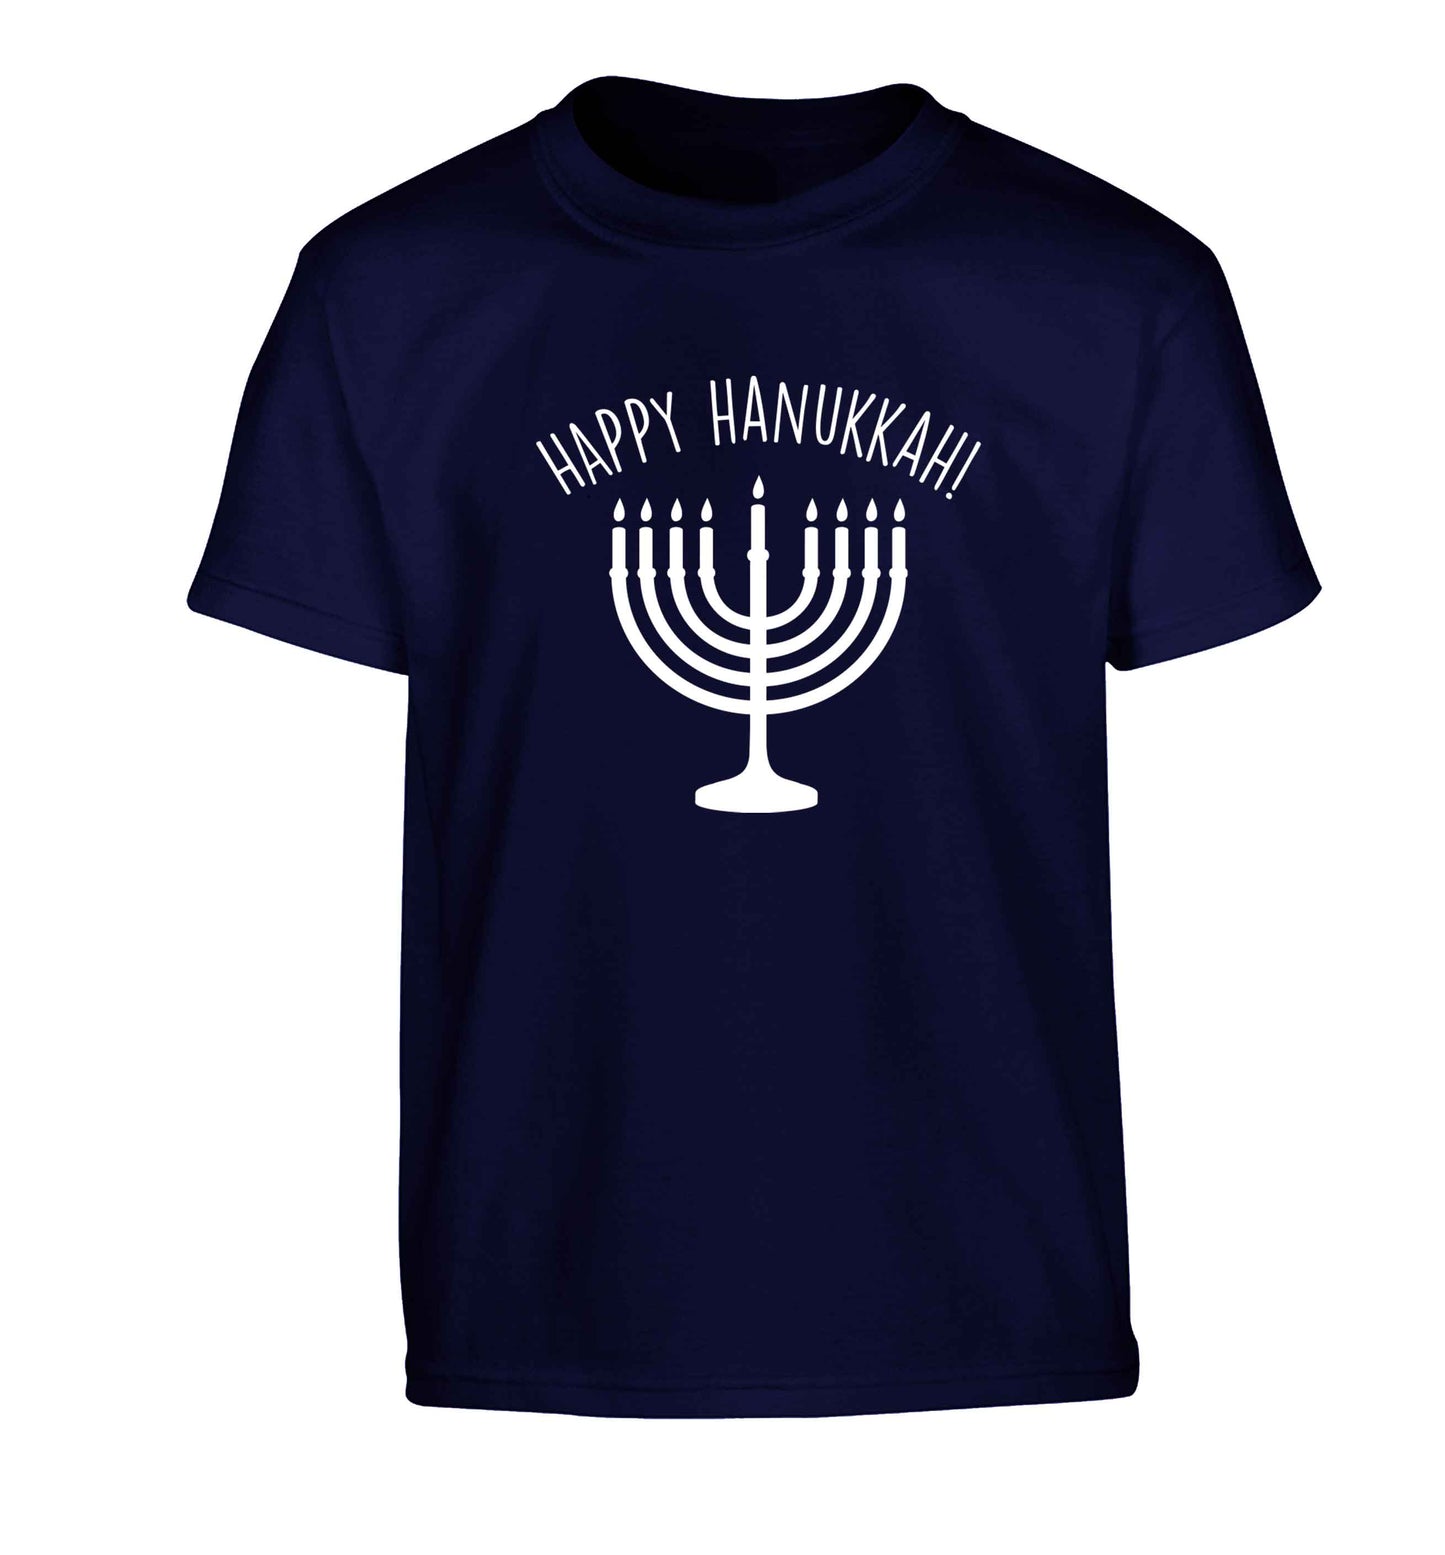 Happy hanukkah Children's navy Tshirt 12-13 Years